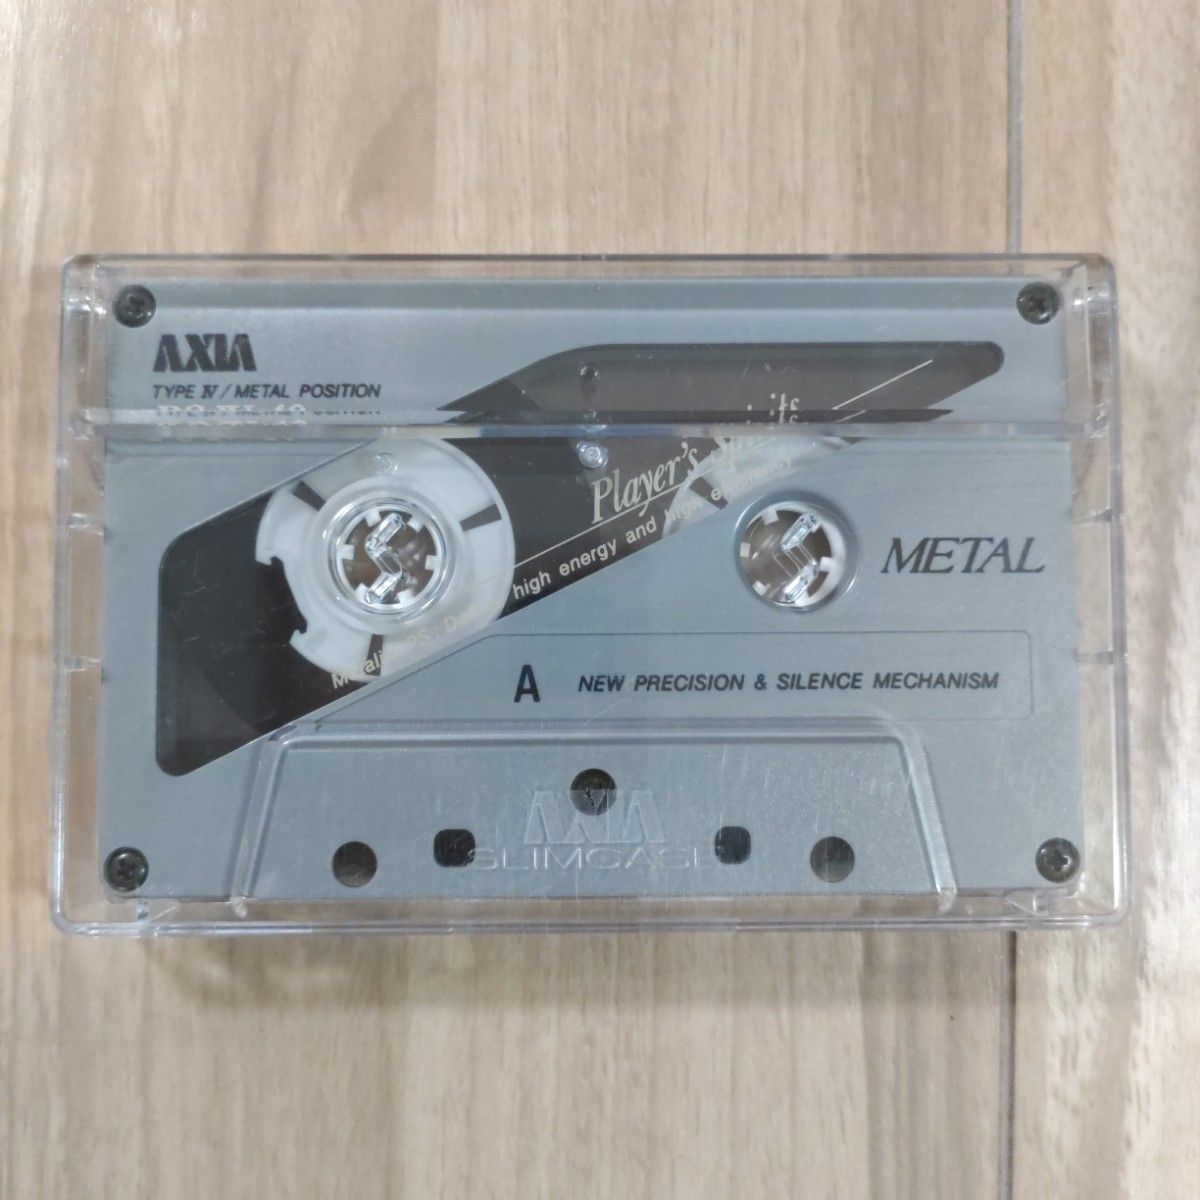 メタルカセットテープ 8本まとめ売り